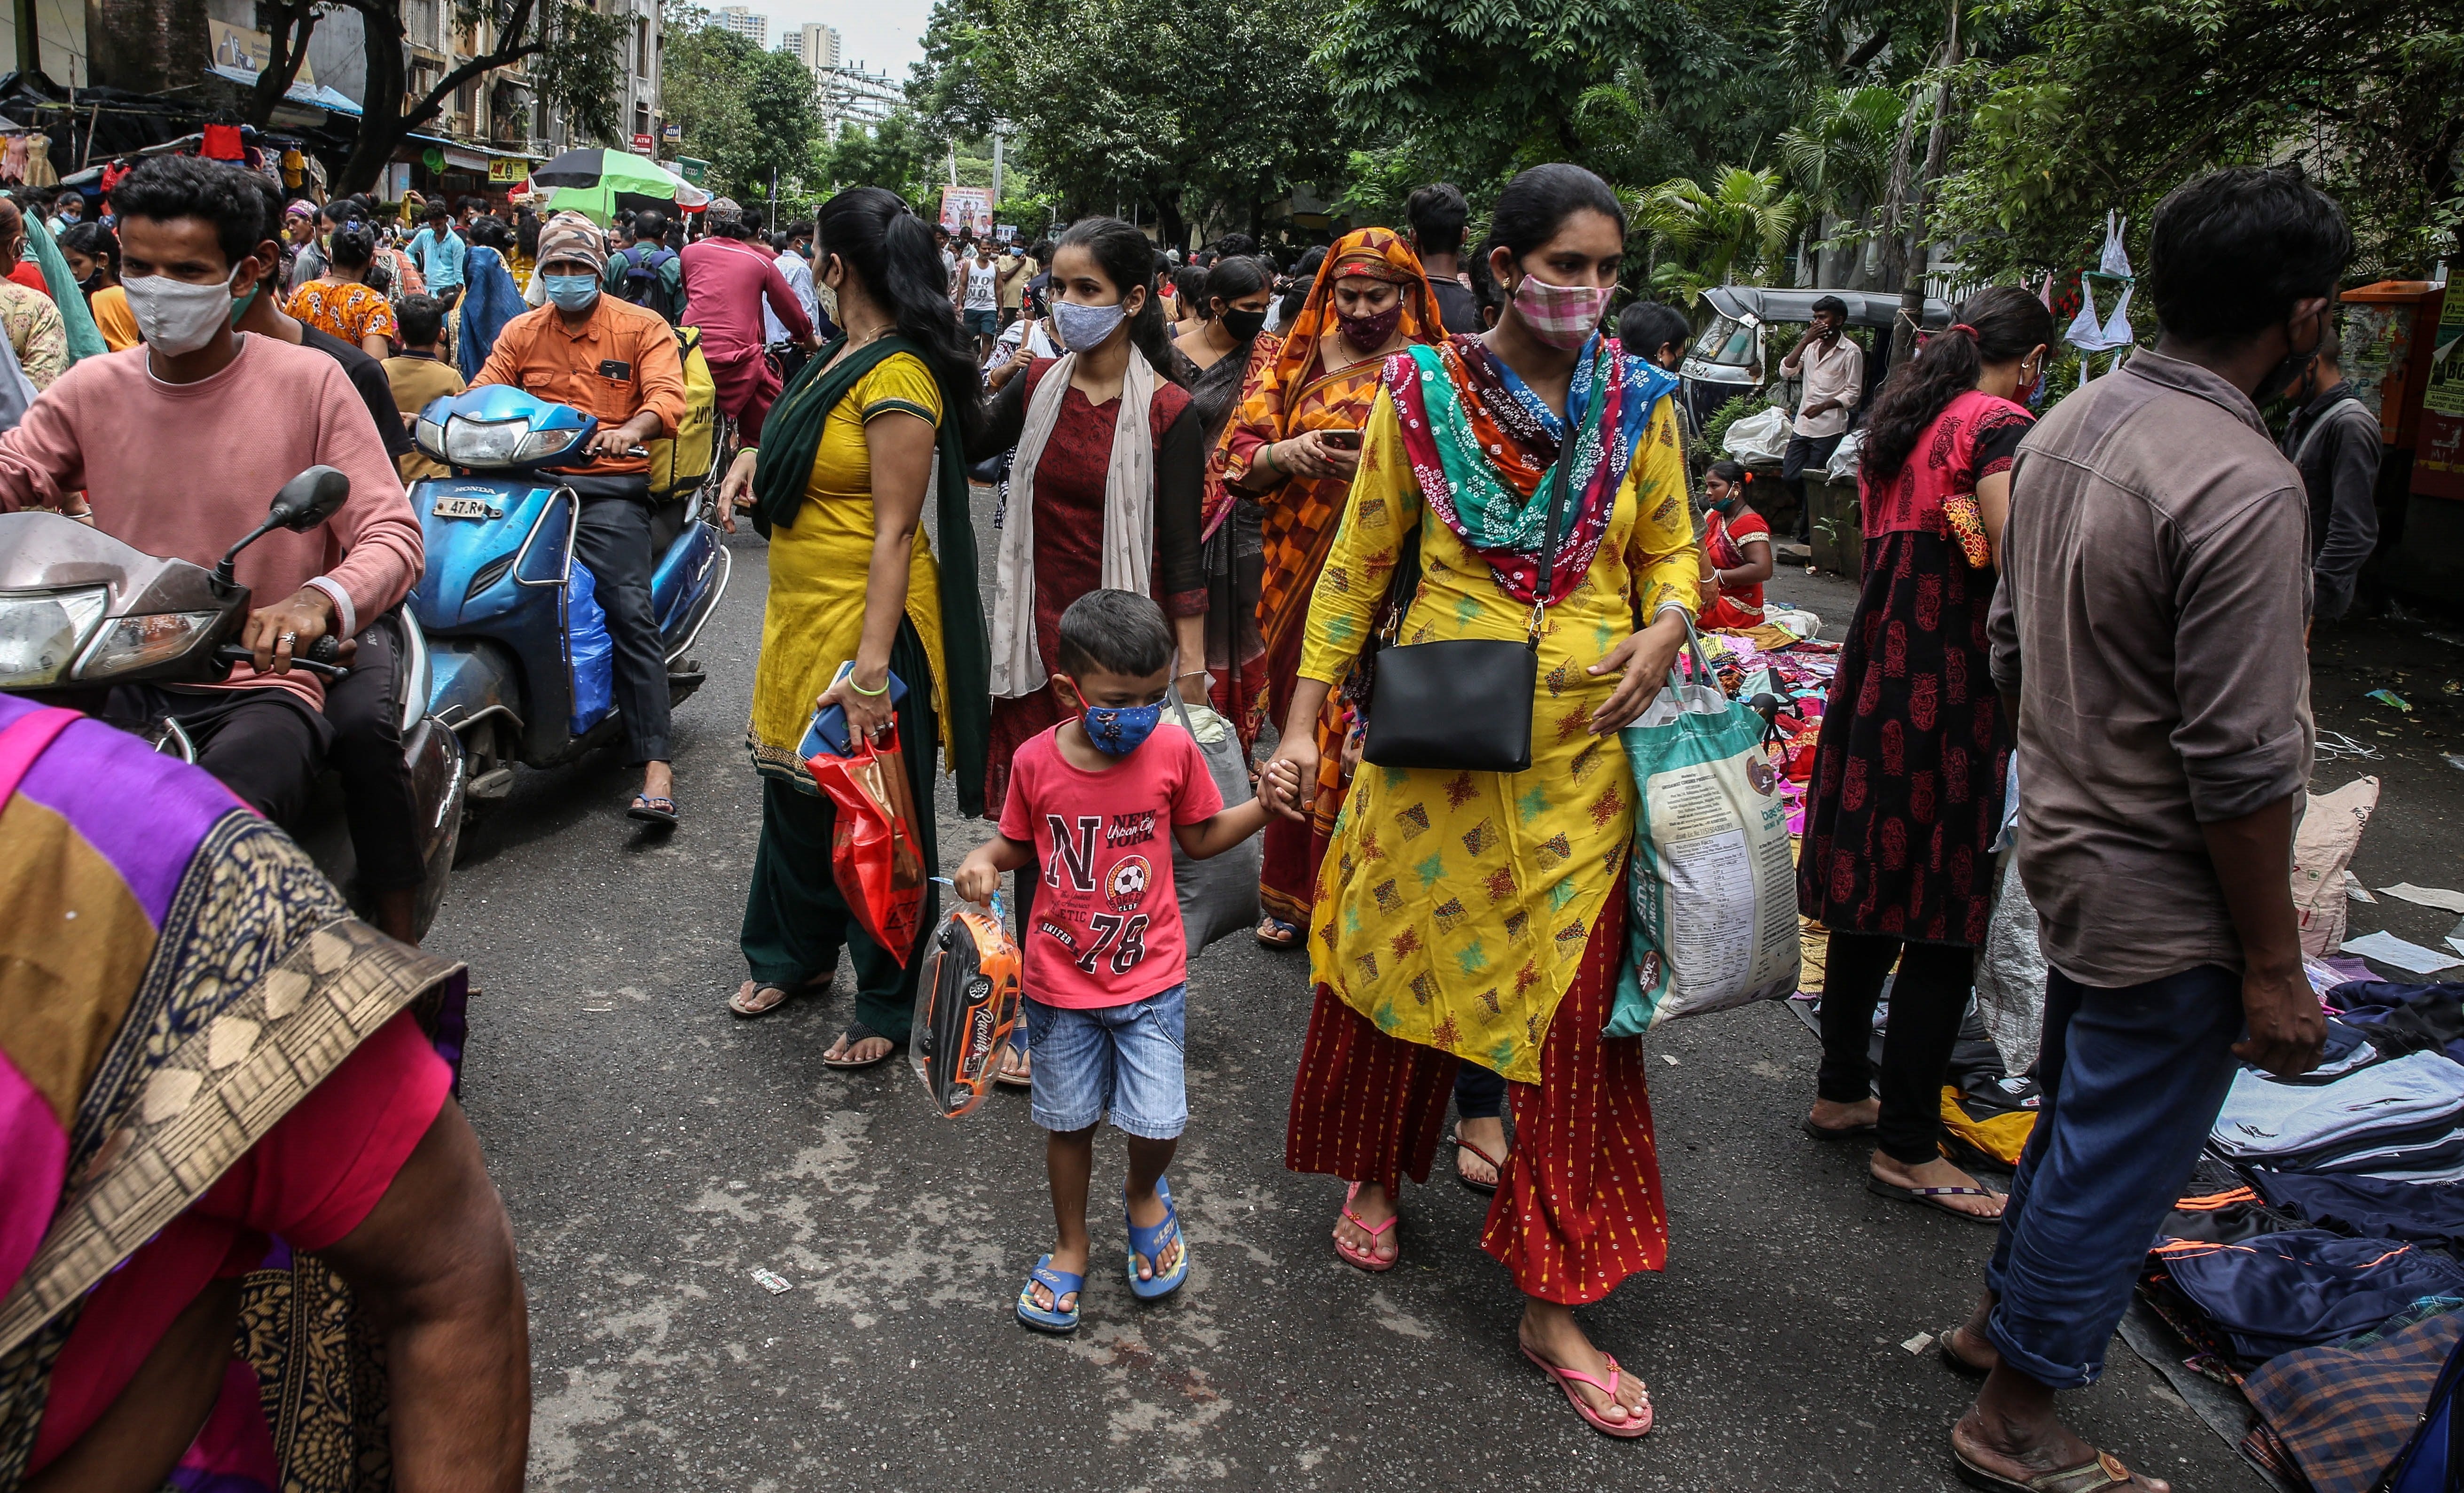 Nova epidèmia a l'Índia: febre alta, deshidratació, dolor corporal i nàusees